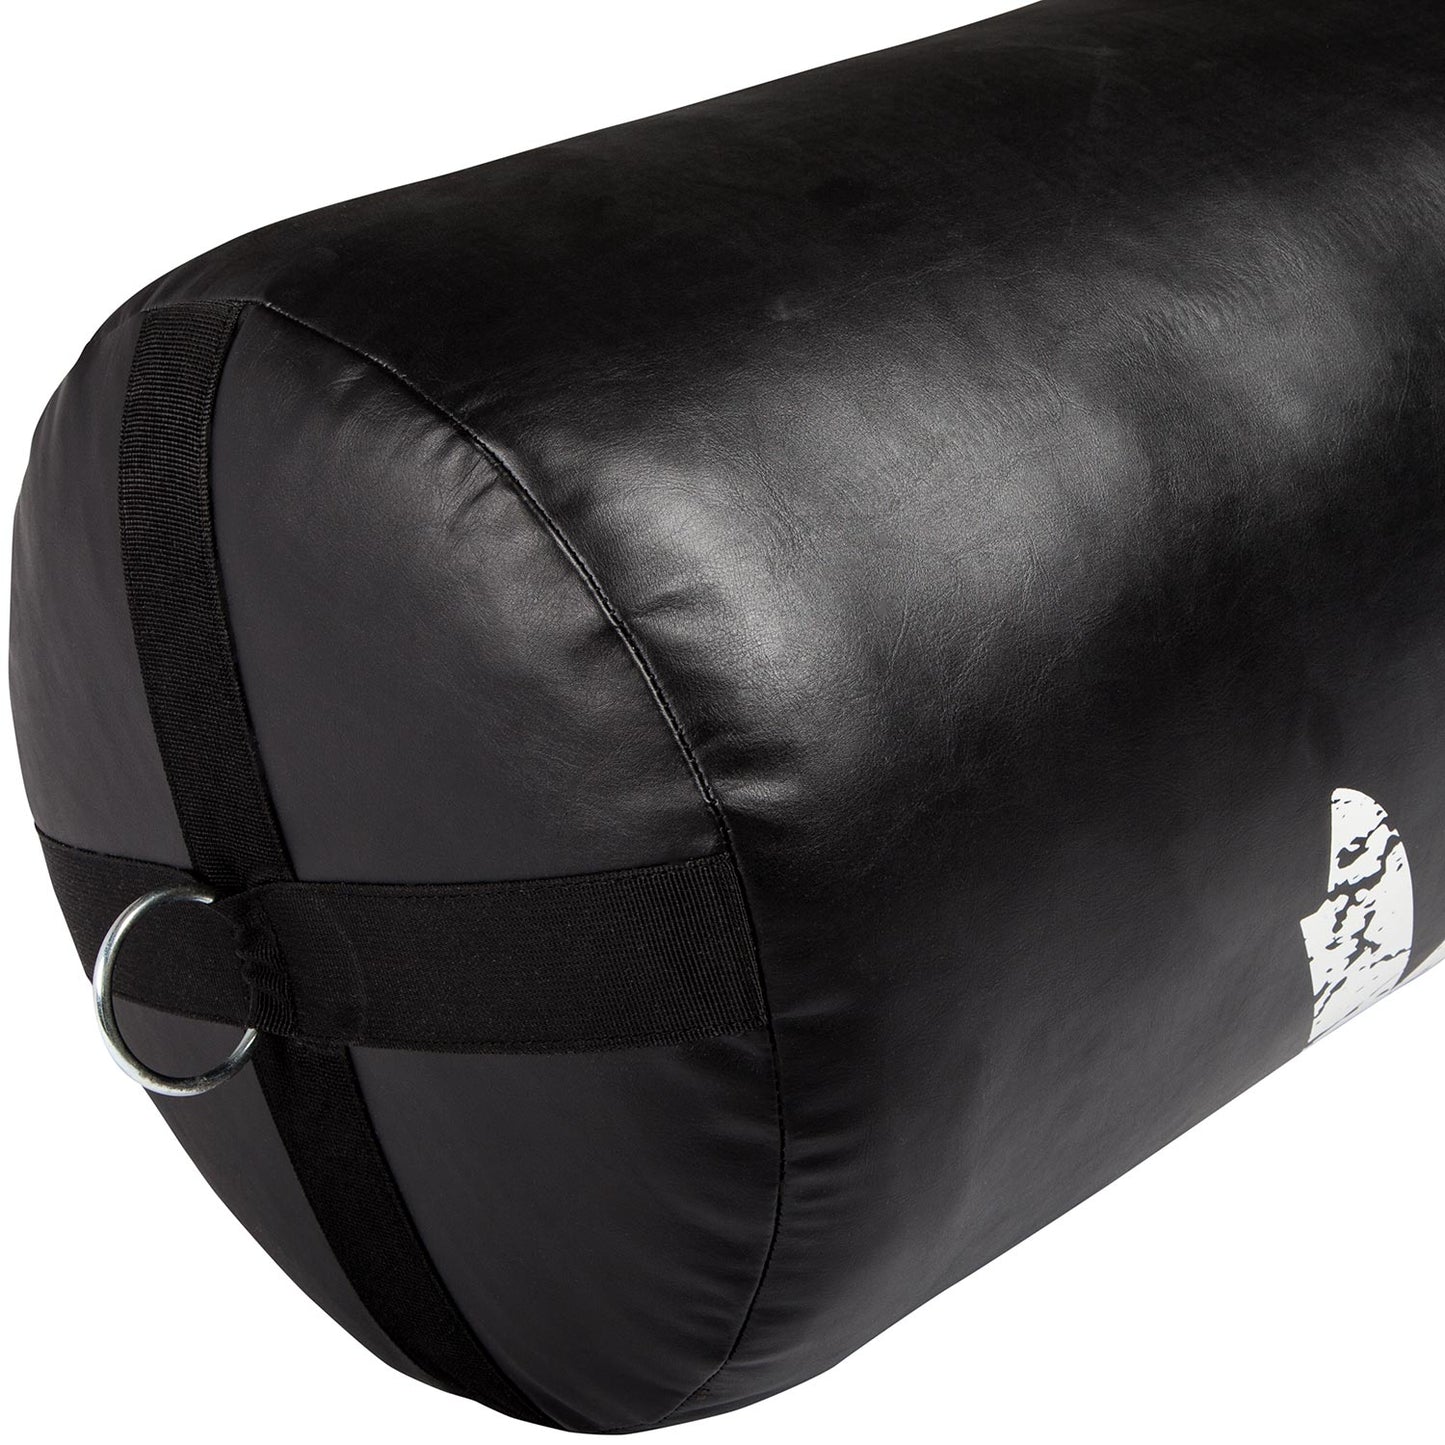 Venum Challenger Punching Bag - Black - 170 cm - Filled